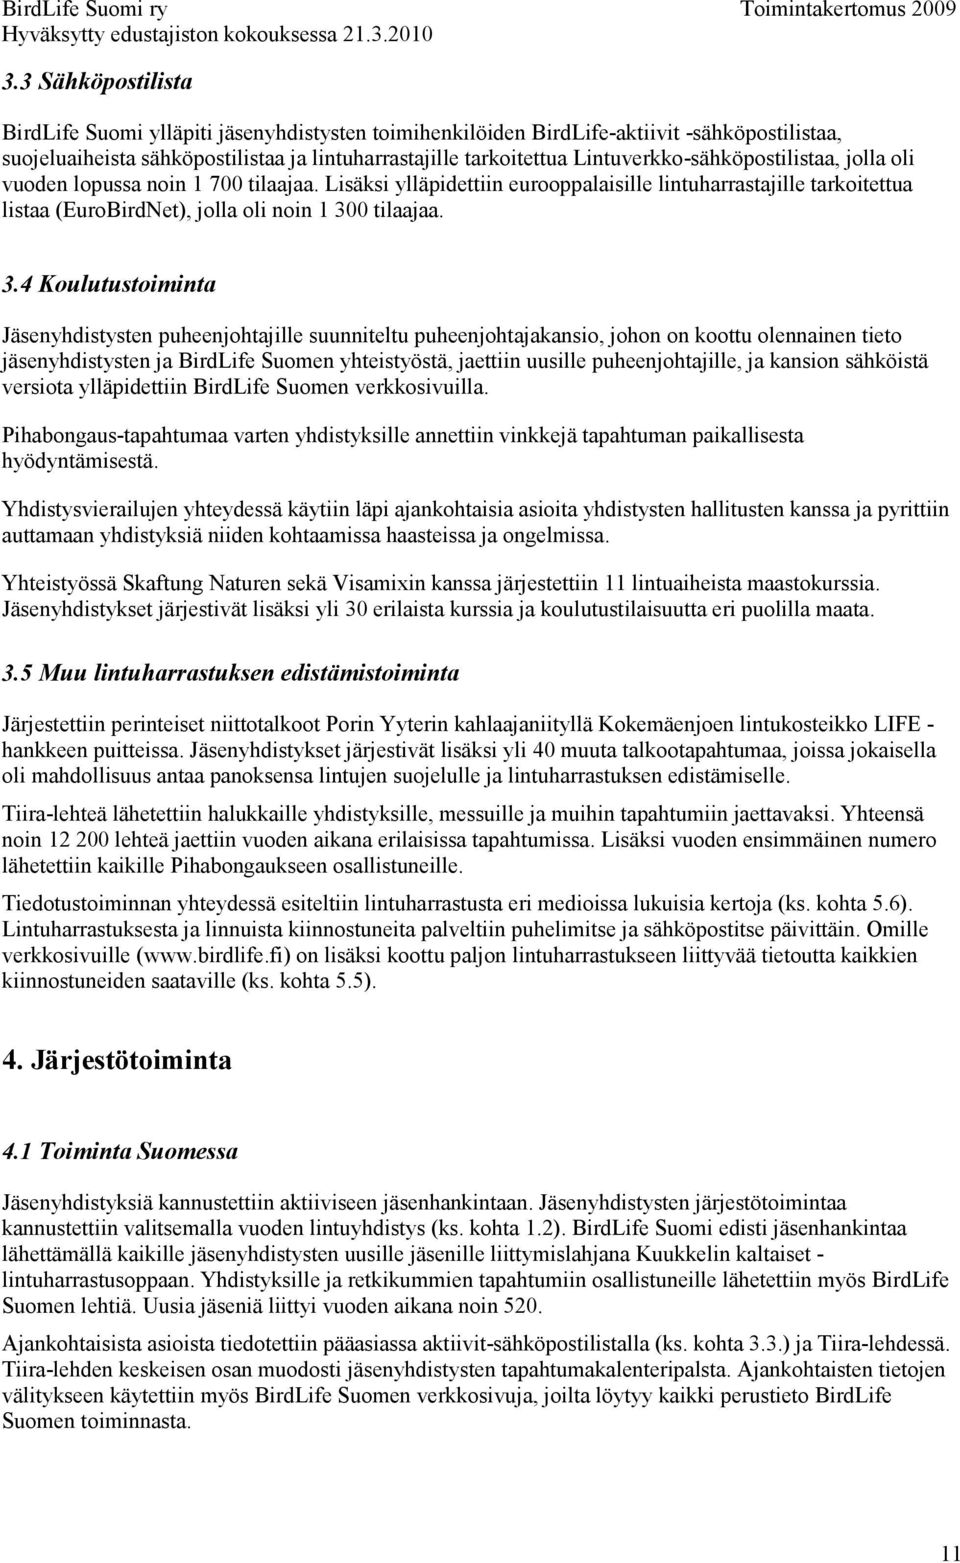 3.4 Koulutustoiminta Jäsenyhdistysten puheenjohtajille suunniteltu puheenjohtajakansio, johon on koottu olennainen tieto jäsenyhdistysten ja BirdLife Suomen yhteistyöstä, jaettiin uusille